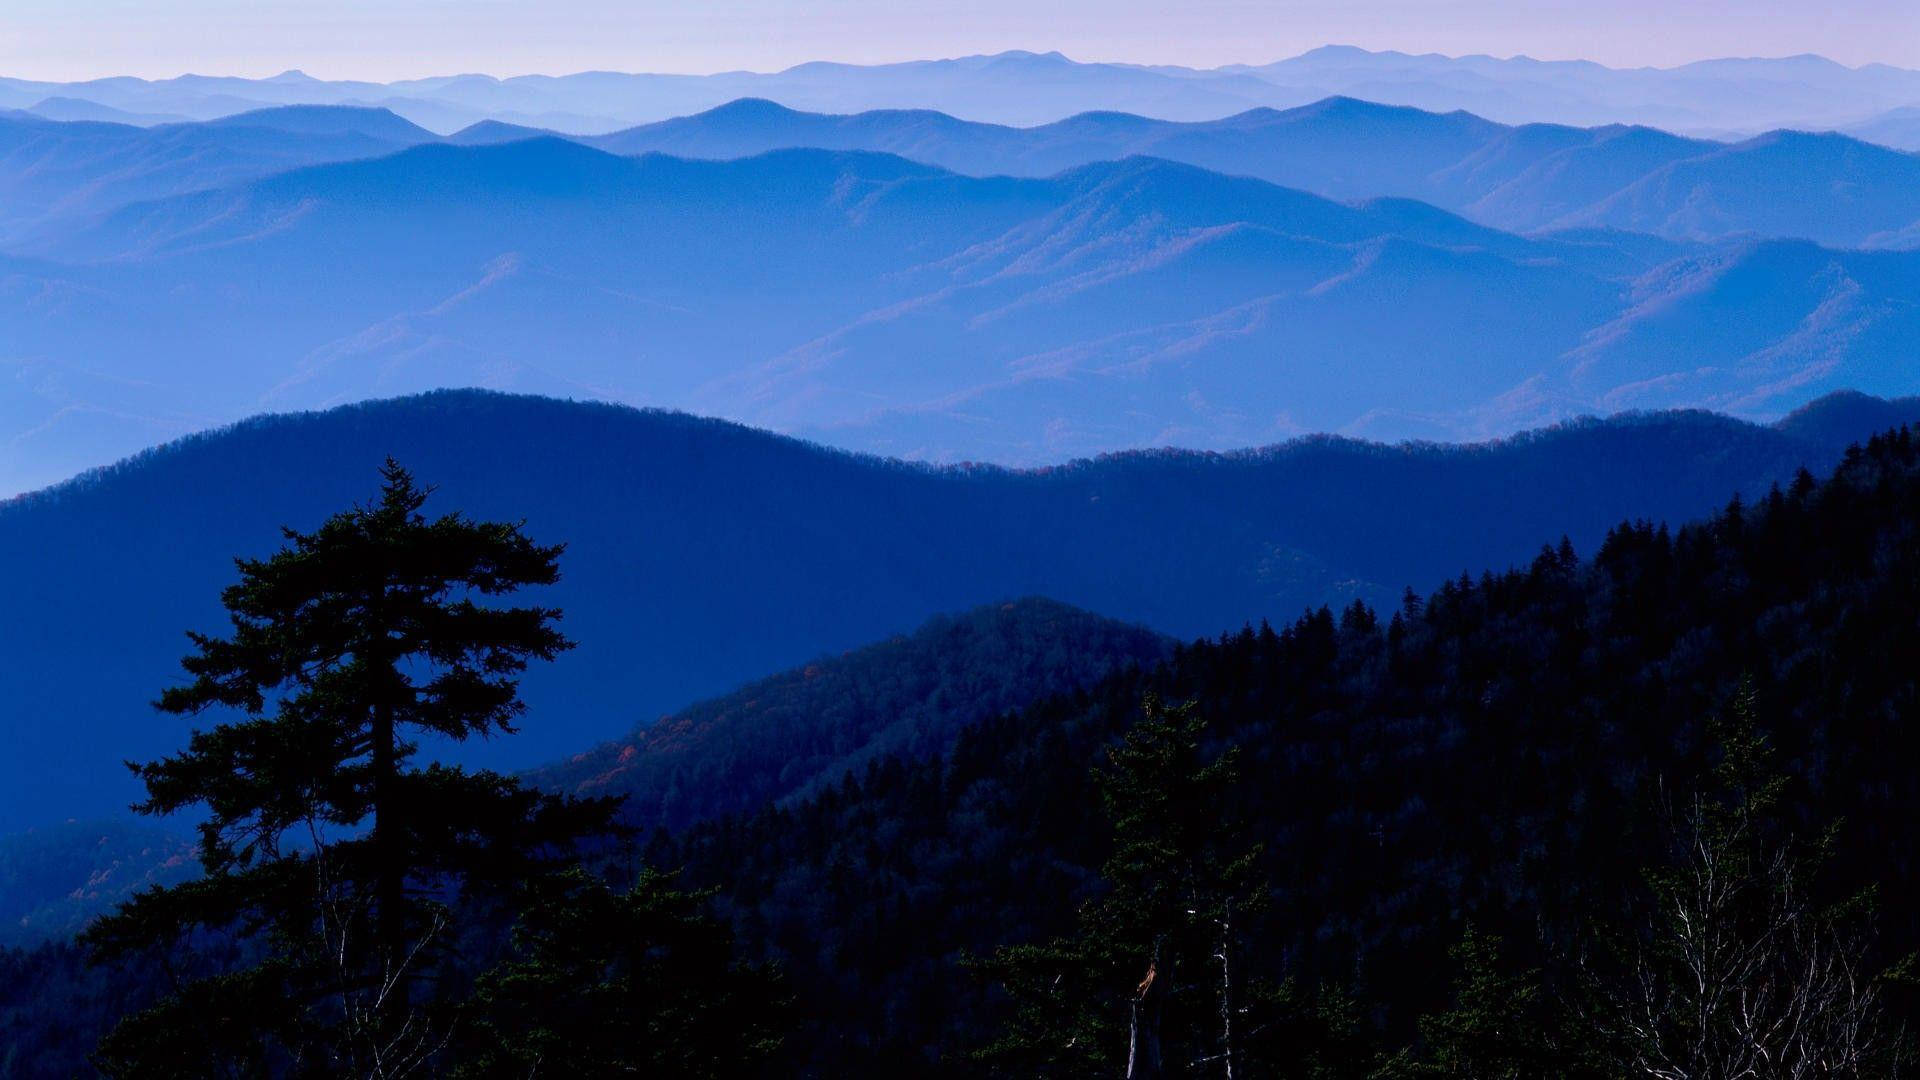 Tag på en rejse gennem den majestætiske natur i Great Smoky Mountains. Wallpaper